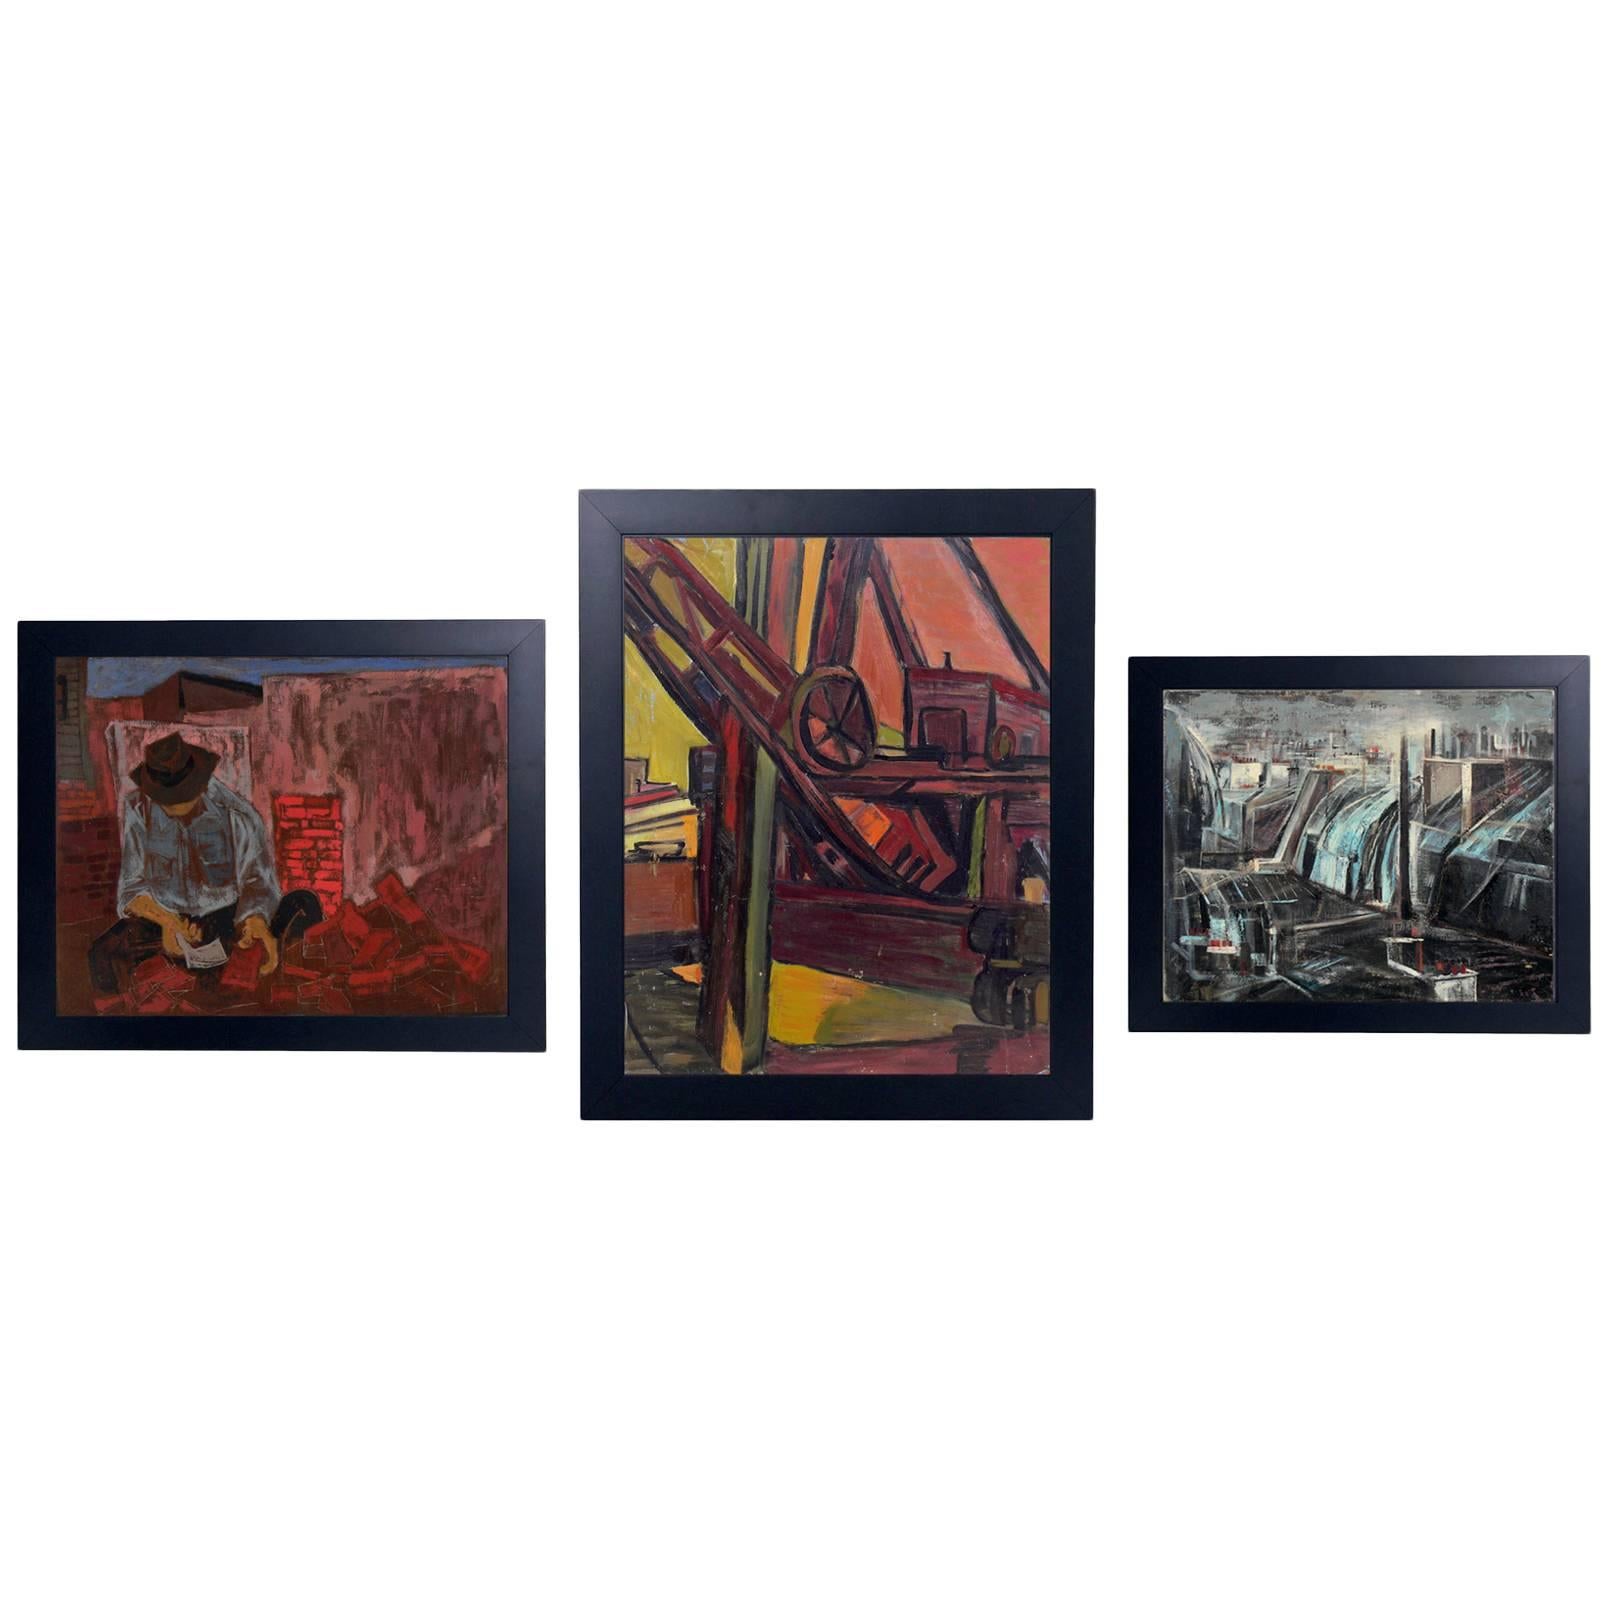 Auswahl von drei Gemälden aus der WPA-Ära